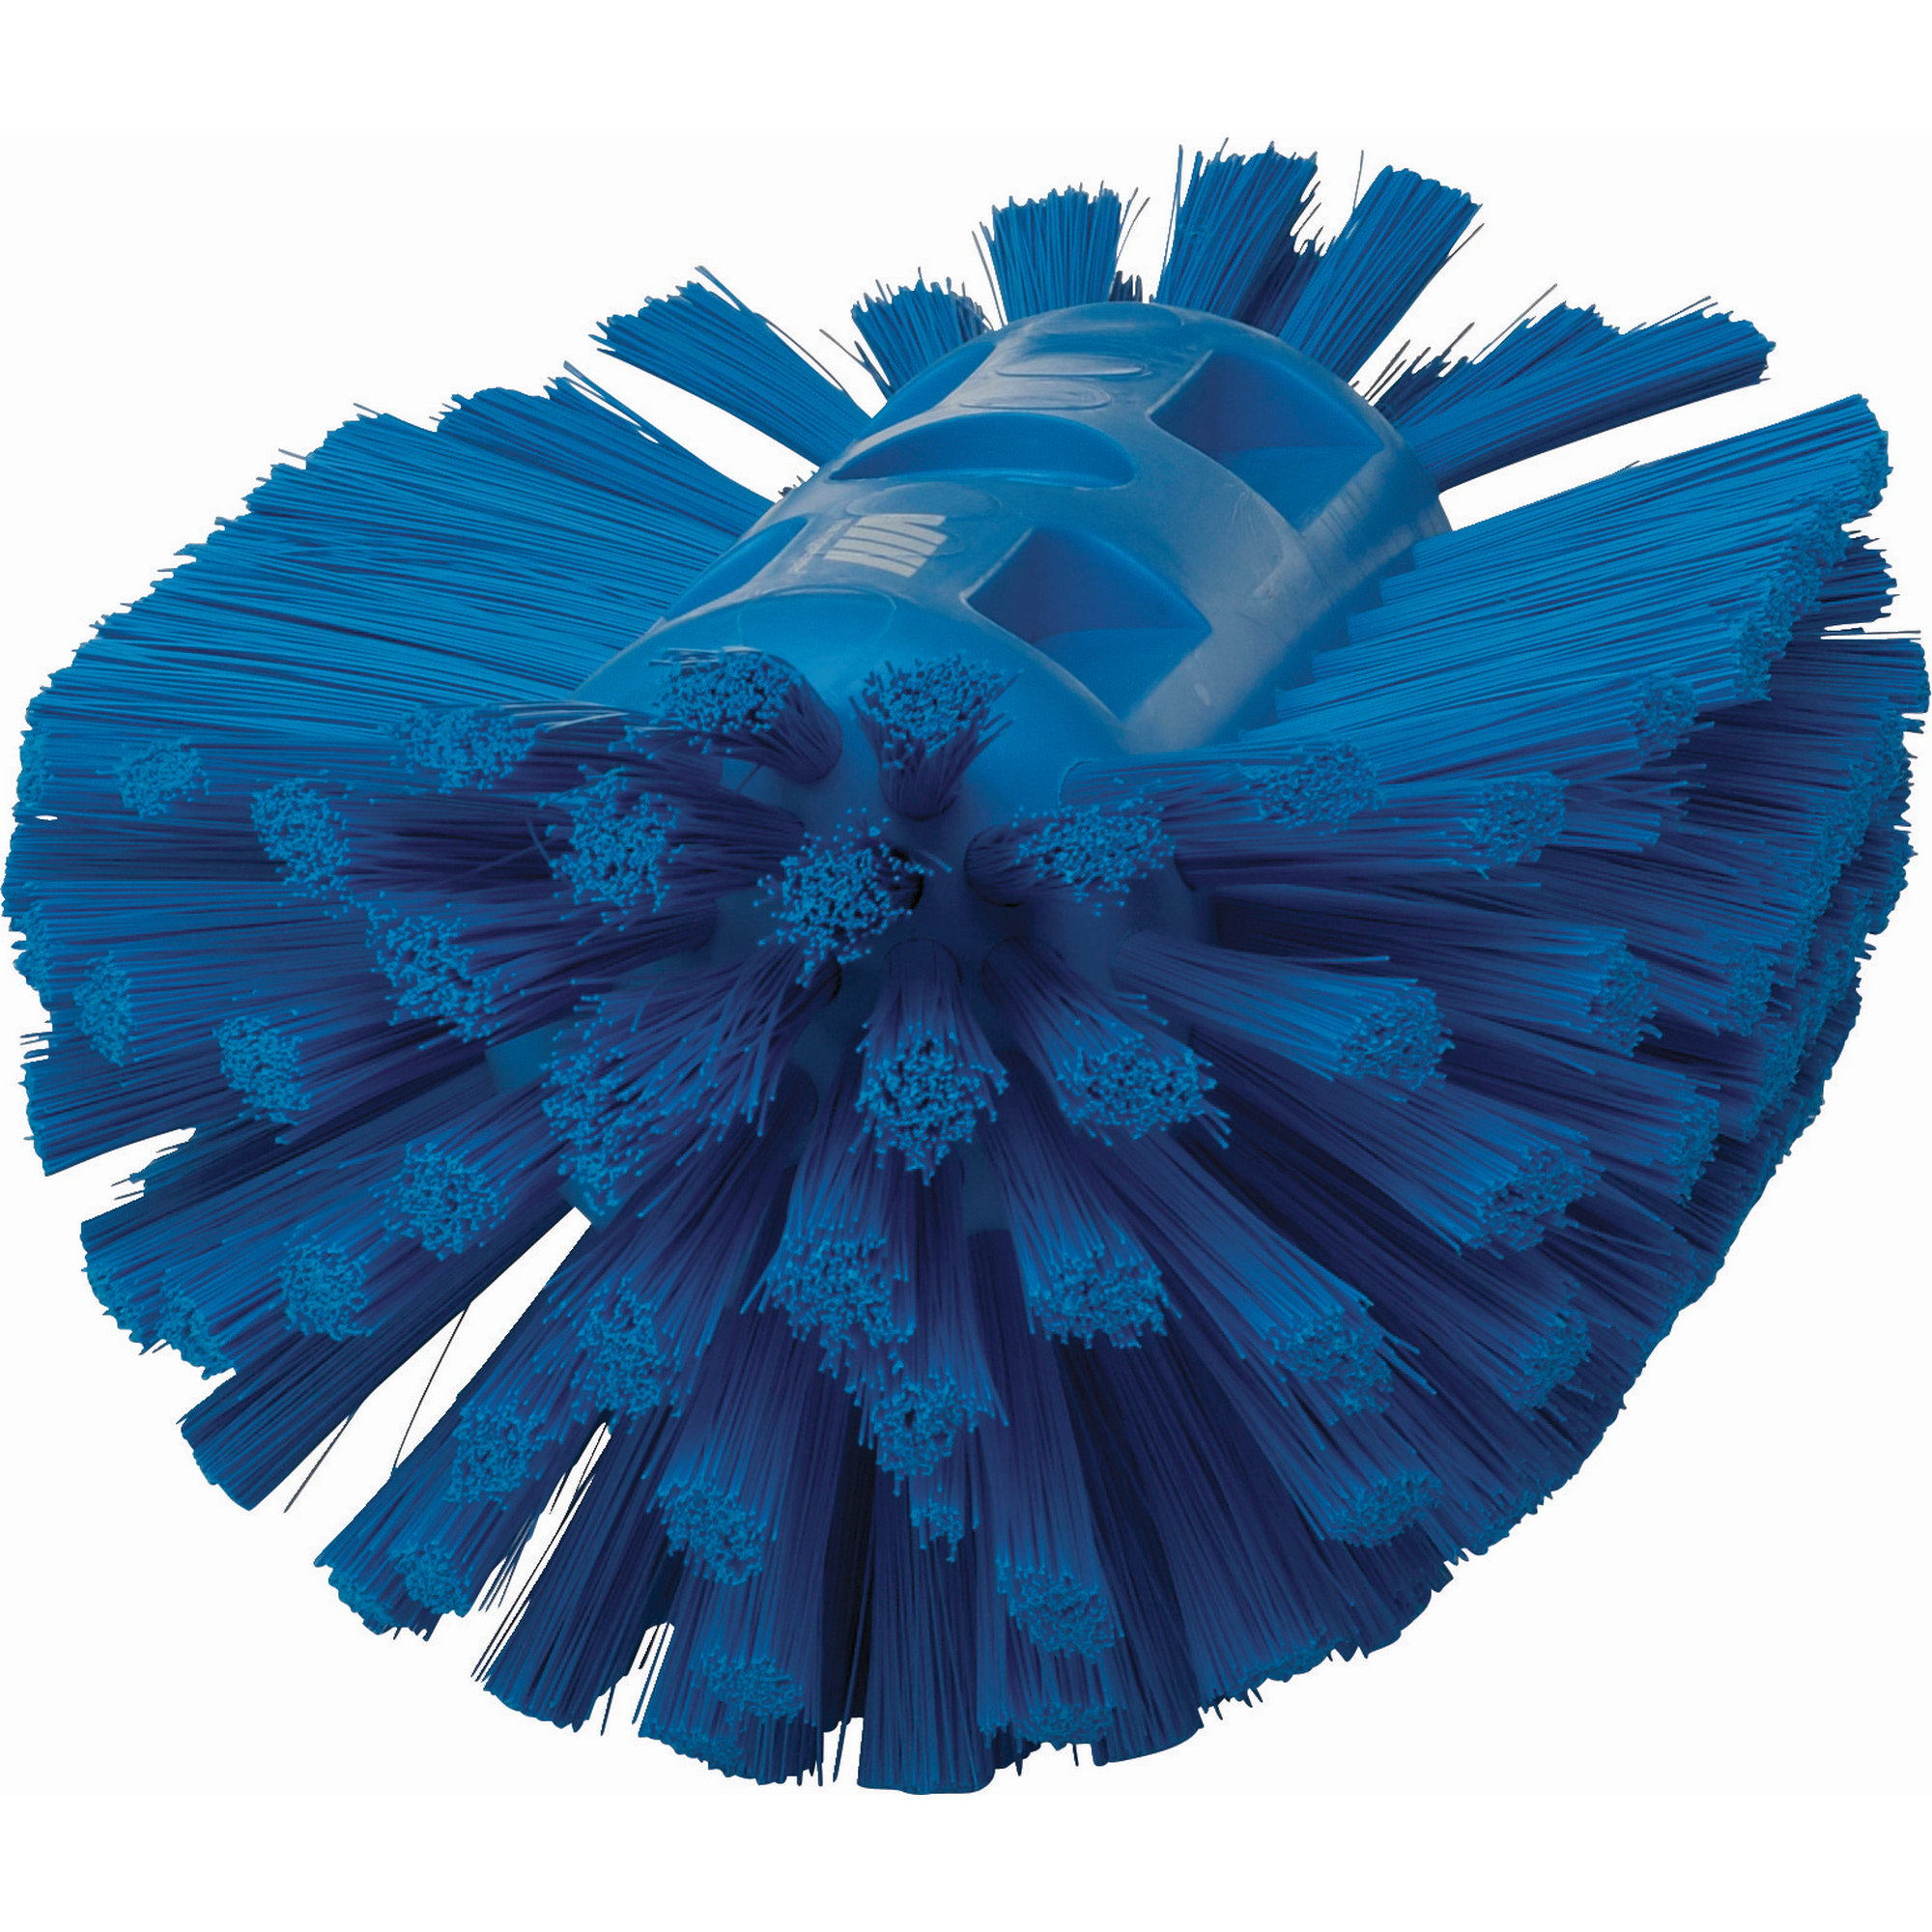 Купить Щетка средней жесткости для очистки ёмкостей Vikan 70393 205мм из синего полипропилена 7ft.ru в интернет магазине Семь Футов